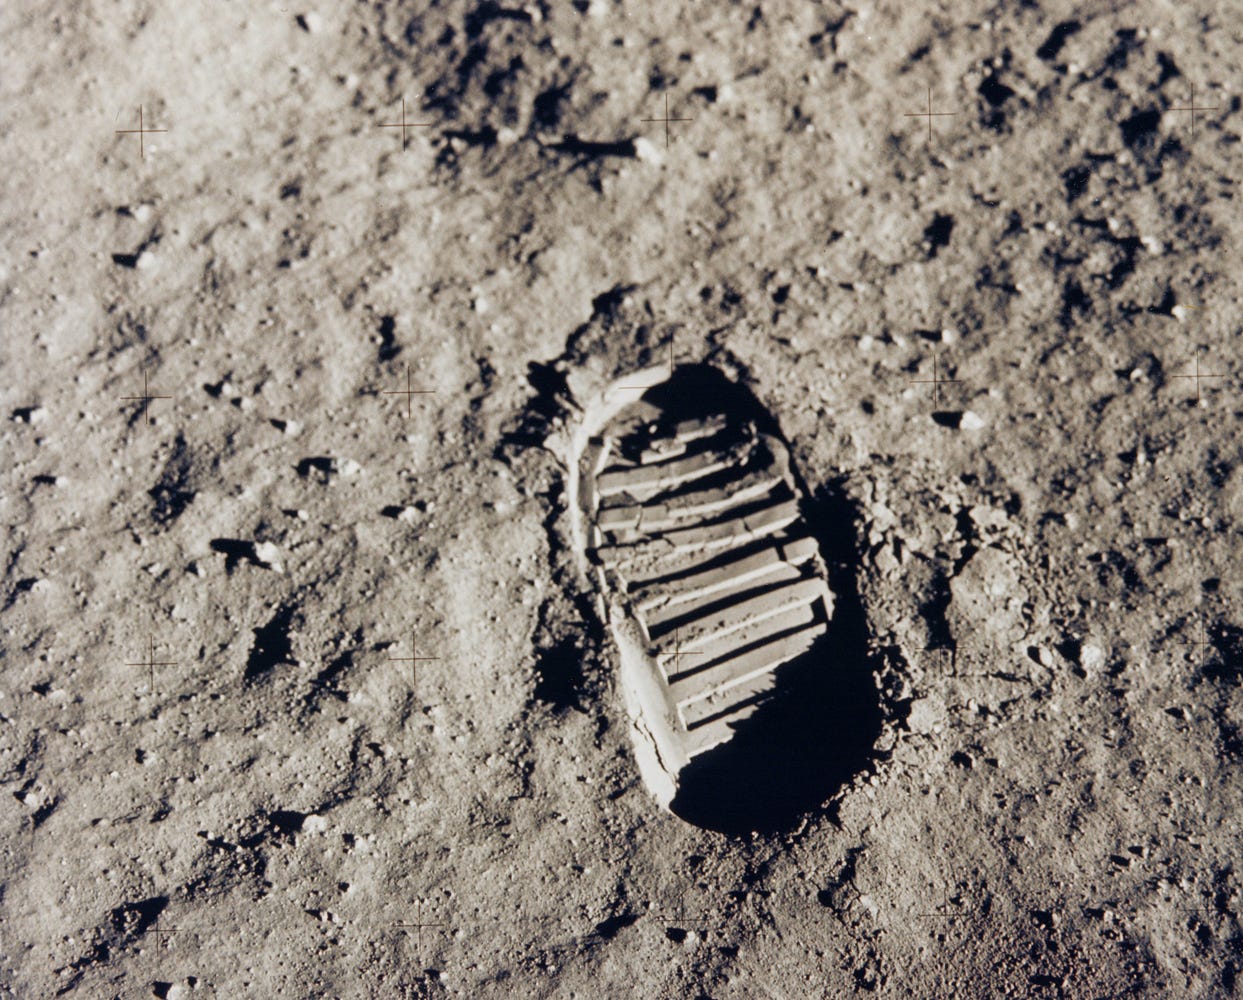 Следы ботинок астронавтов Аполлона на луне